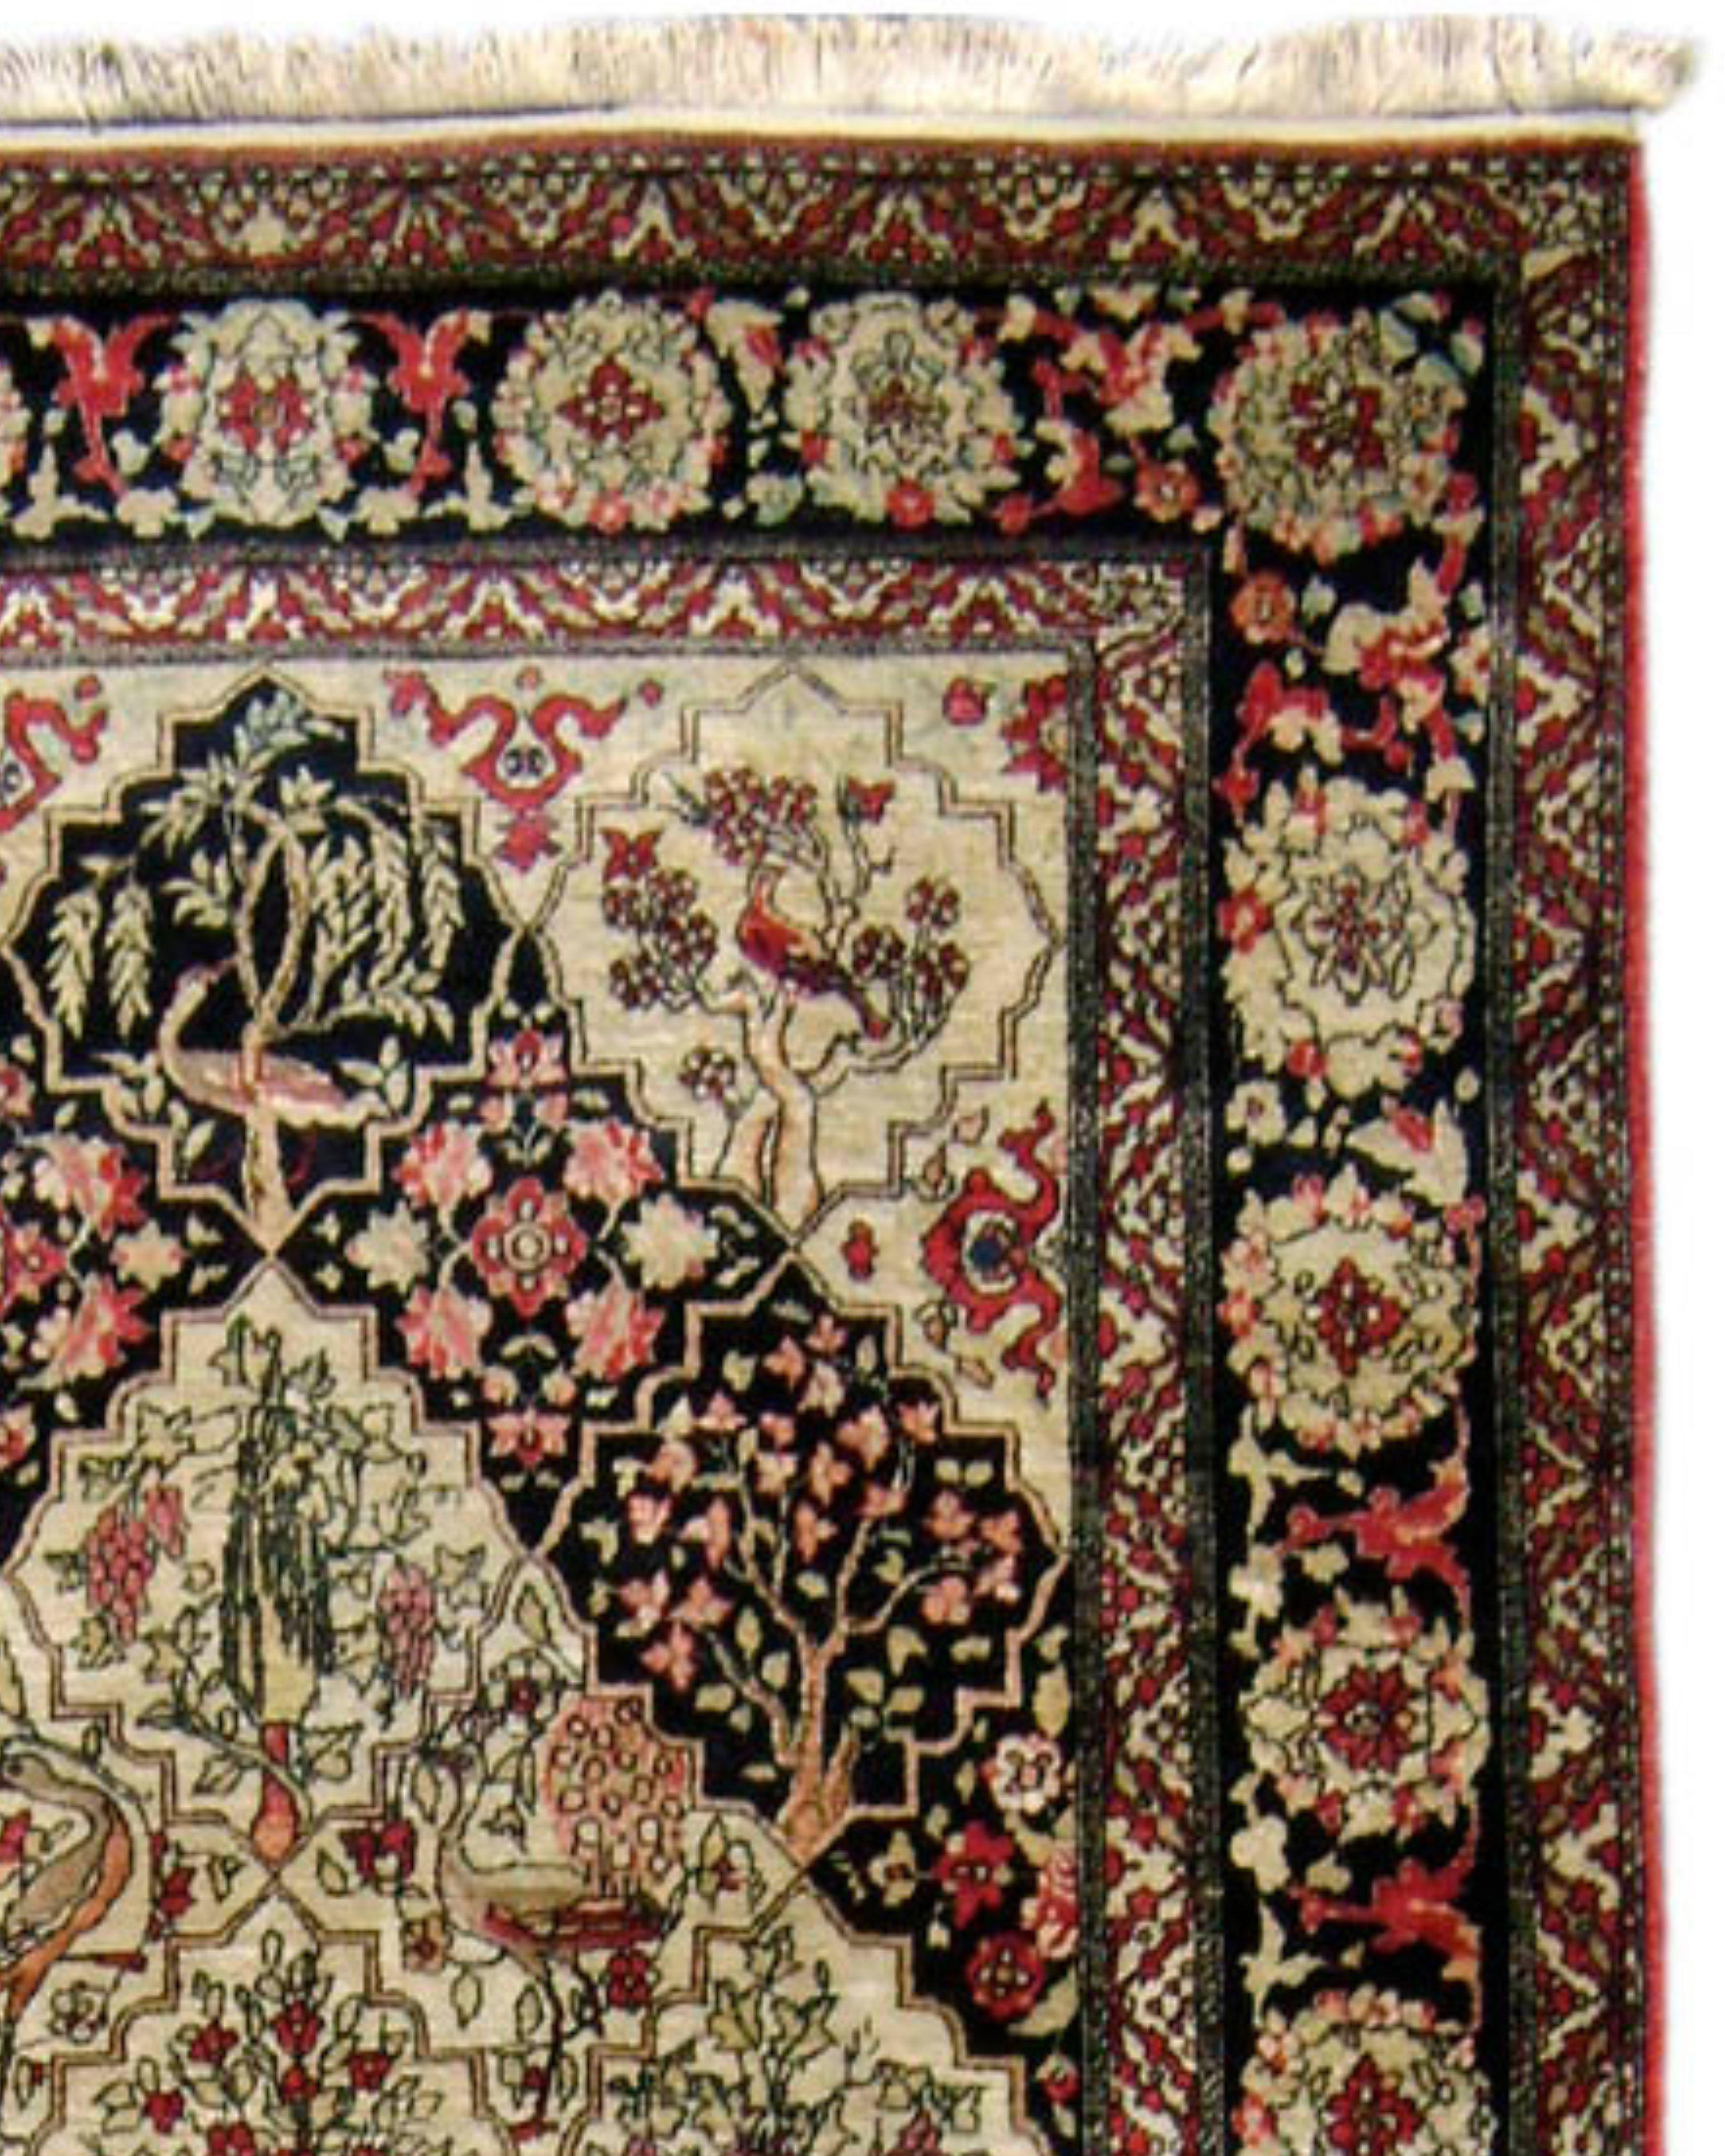 Antiker persischer Isfahan-Teppich, frühes 20. Jahrhundert

Dieser Isfahan-Teppich zeigt schöne Darstellungen von Vögeln, Blumen und Bäumen auf dem gesamten Stück und ist in ausgezeichnetem Zustand.

Zusätzliche Informationen:
Abmessungen: 4'6